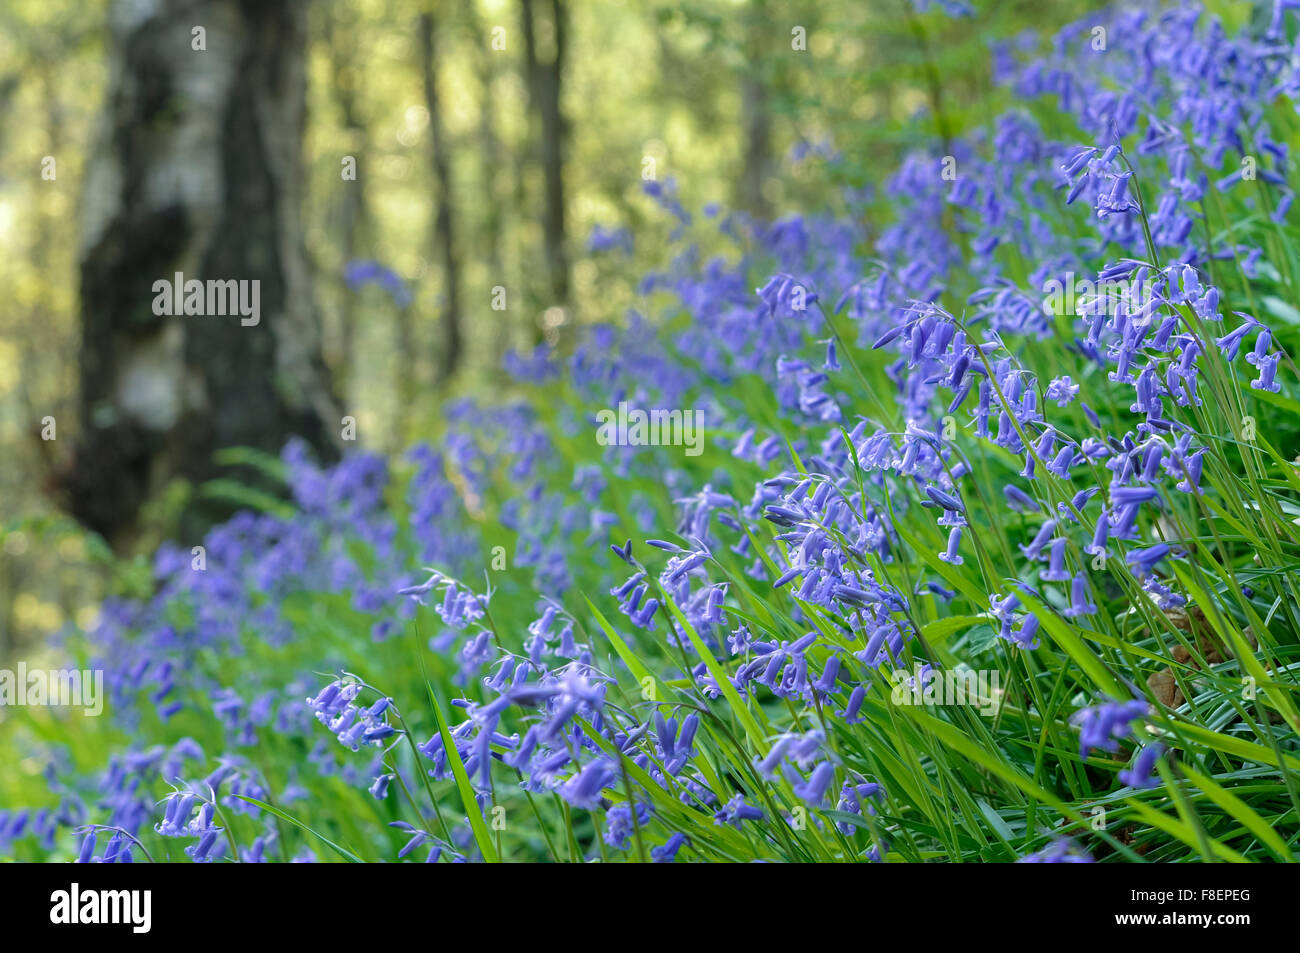 Splendida massa di bluebells in un bosco inglese in primavera. Basso angolo di visione con un morbido sfondo verde. Foto Stock